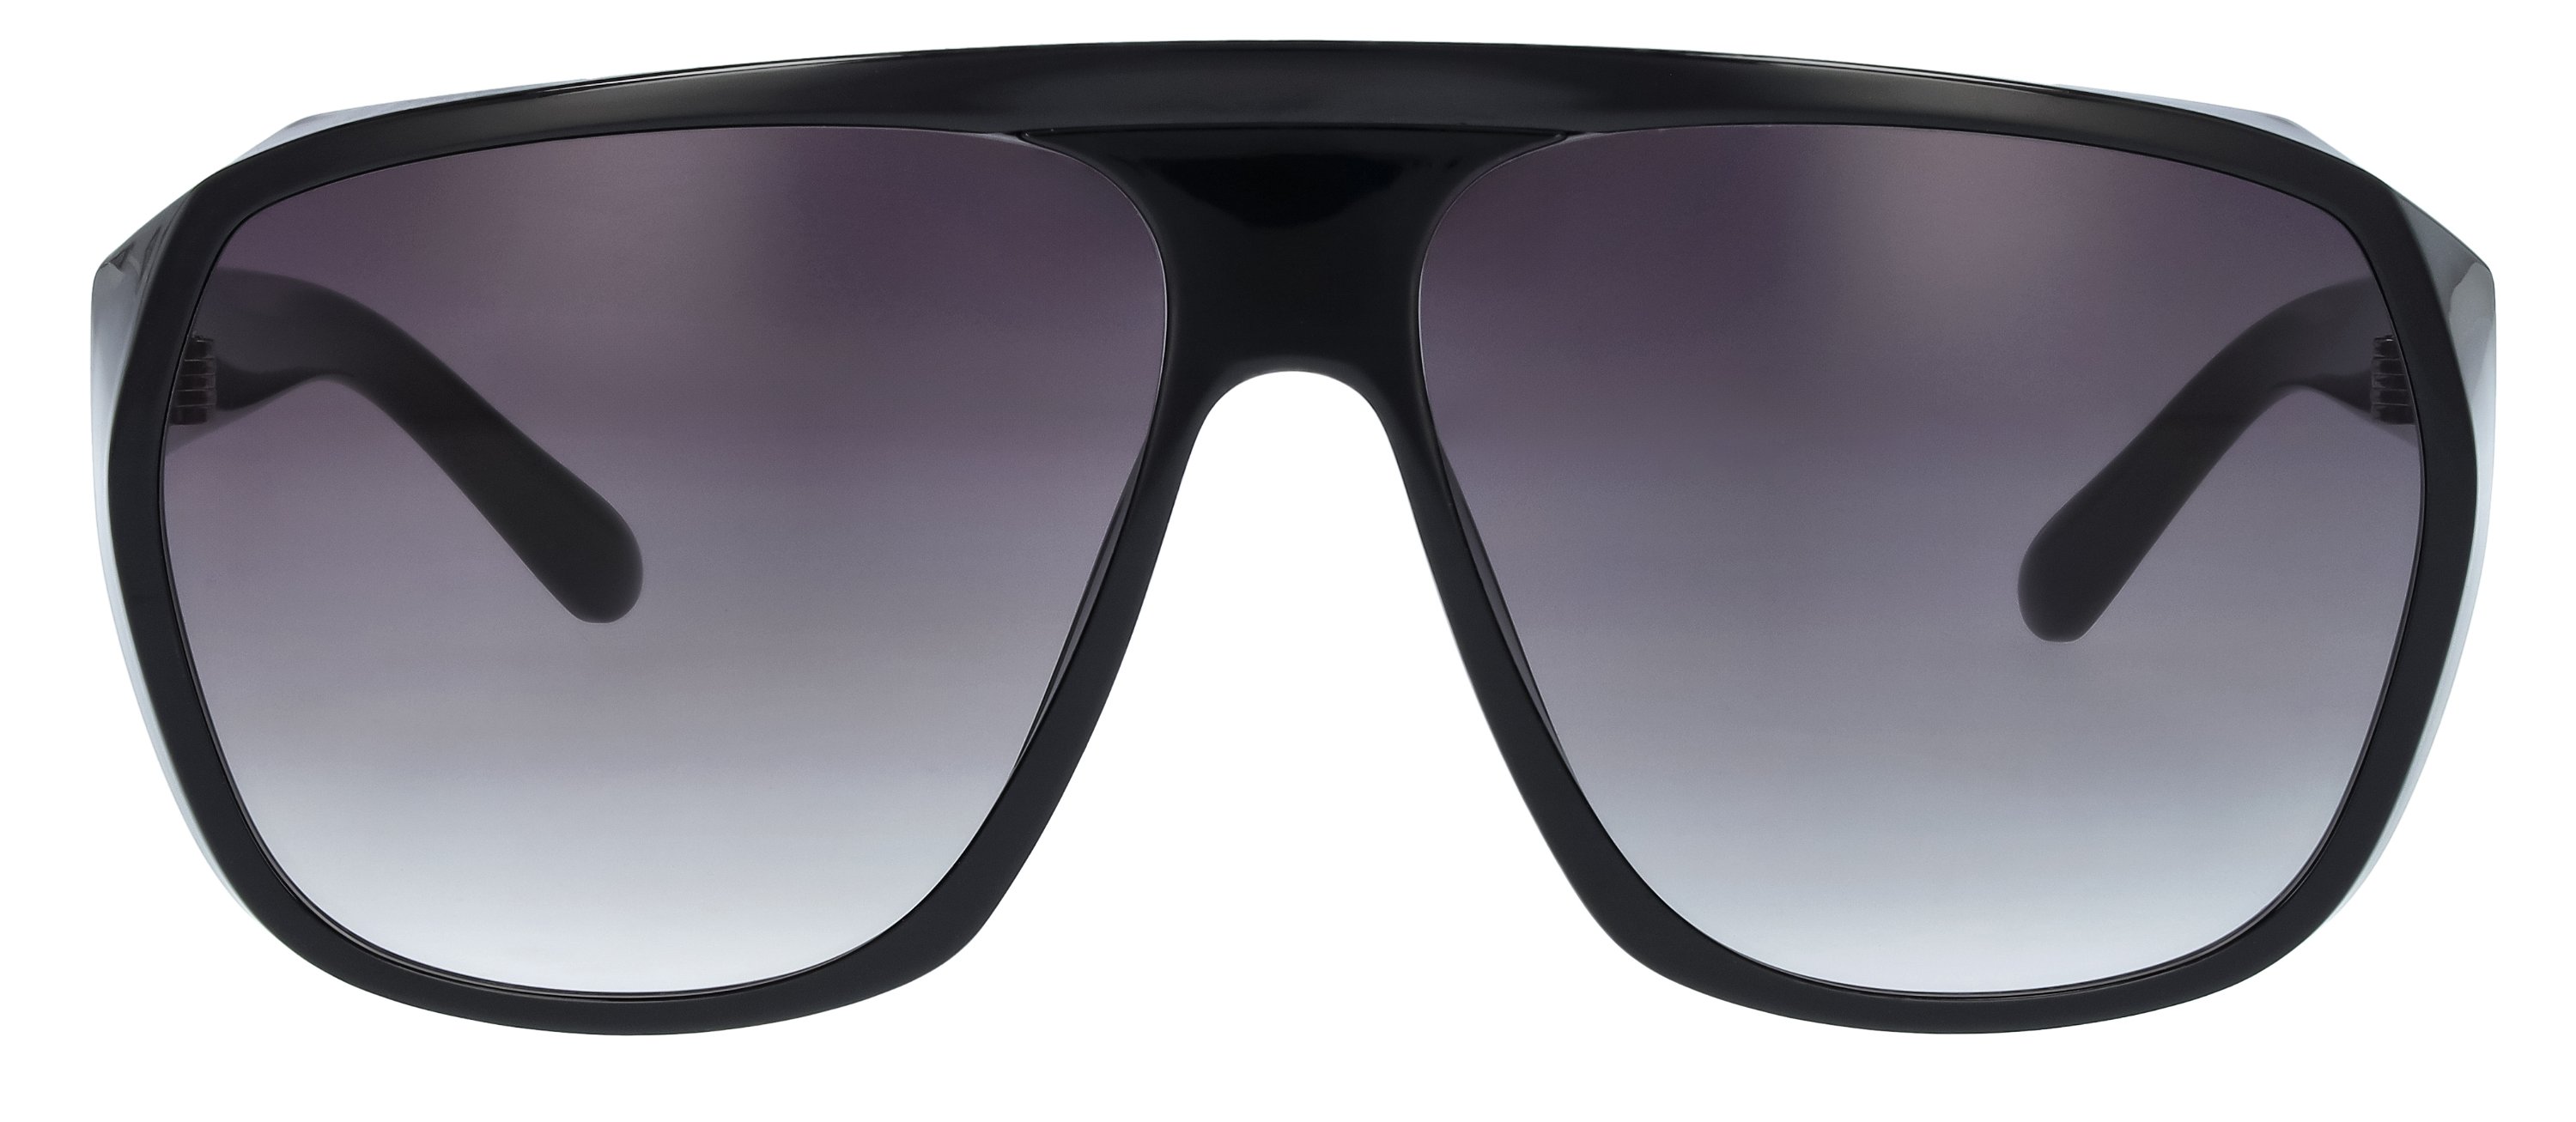 Das Bild zeigt die Sonnenbrille 721121 von der Marke Abele Optik in schwarz.